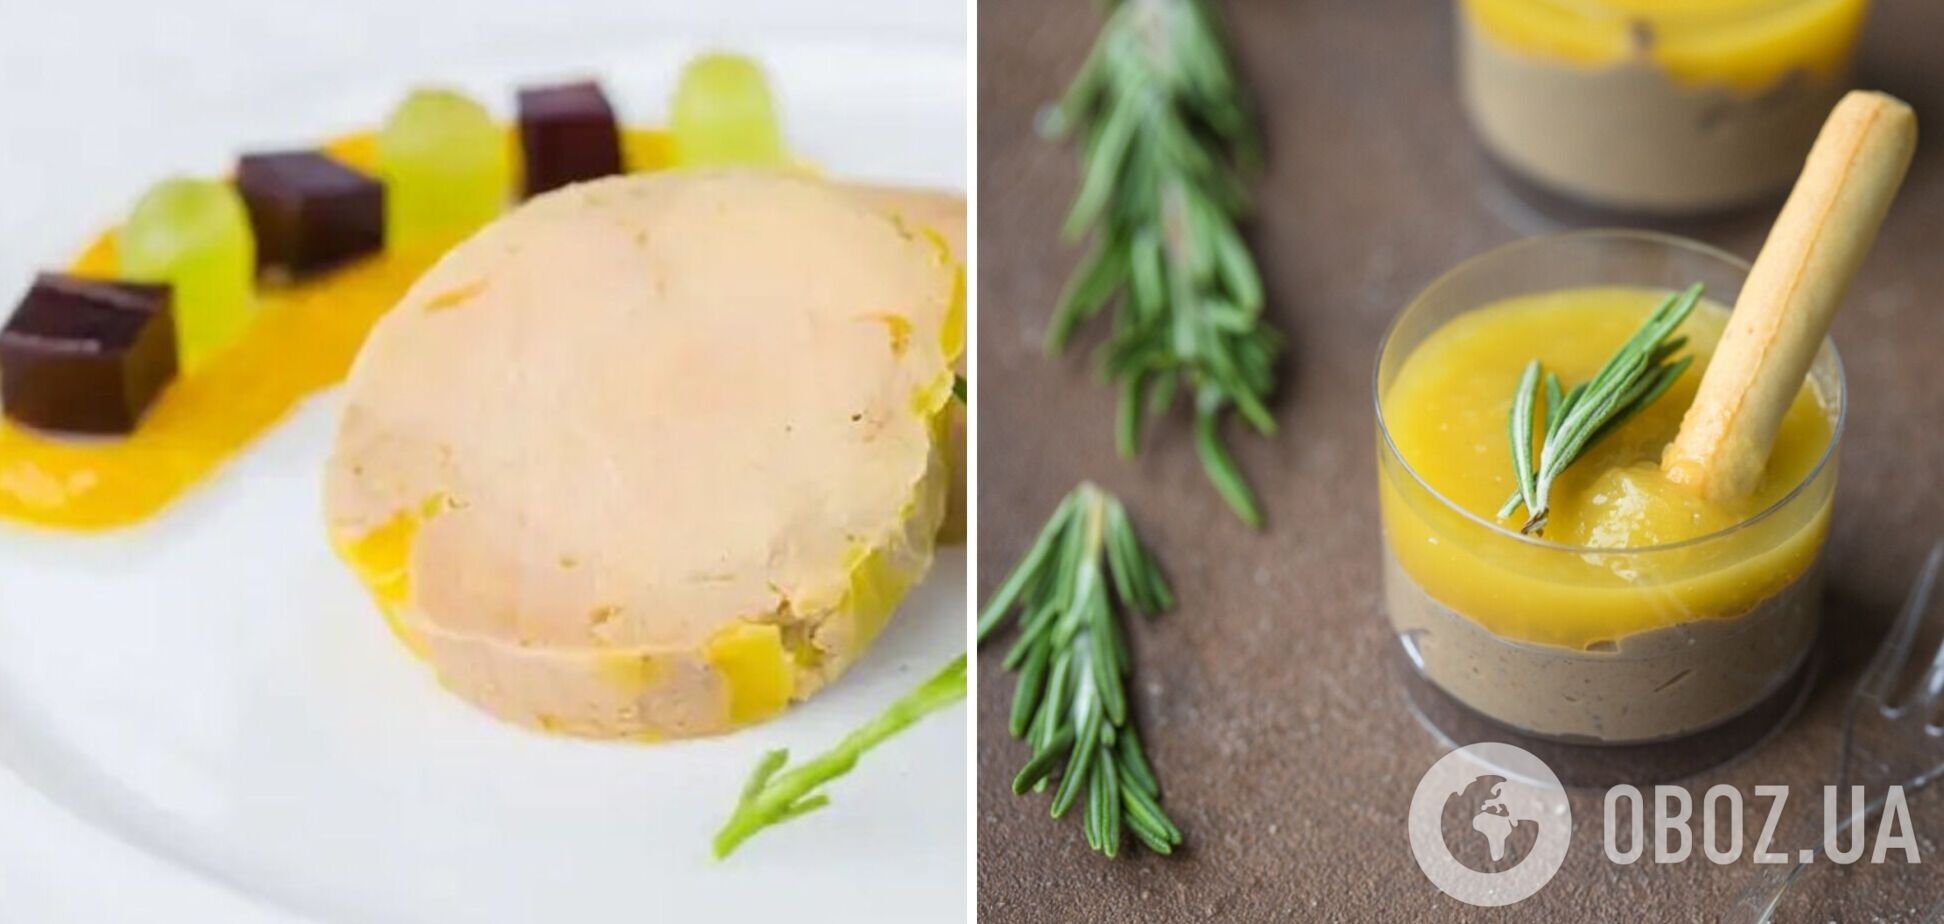 Як оригінально подати печінковий паштет на святковий стіл: чудова ідея із желе